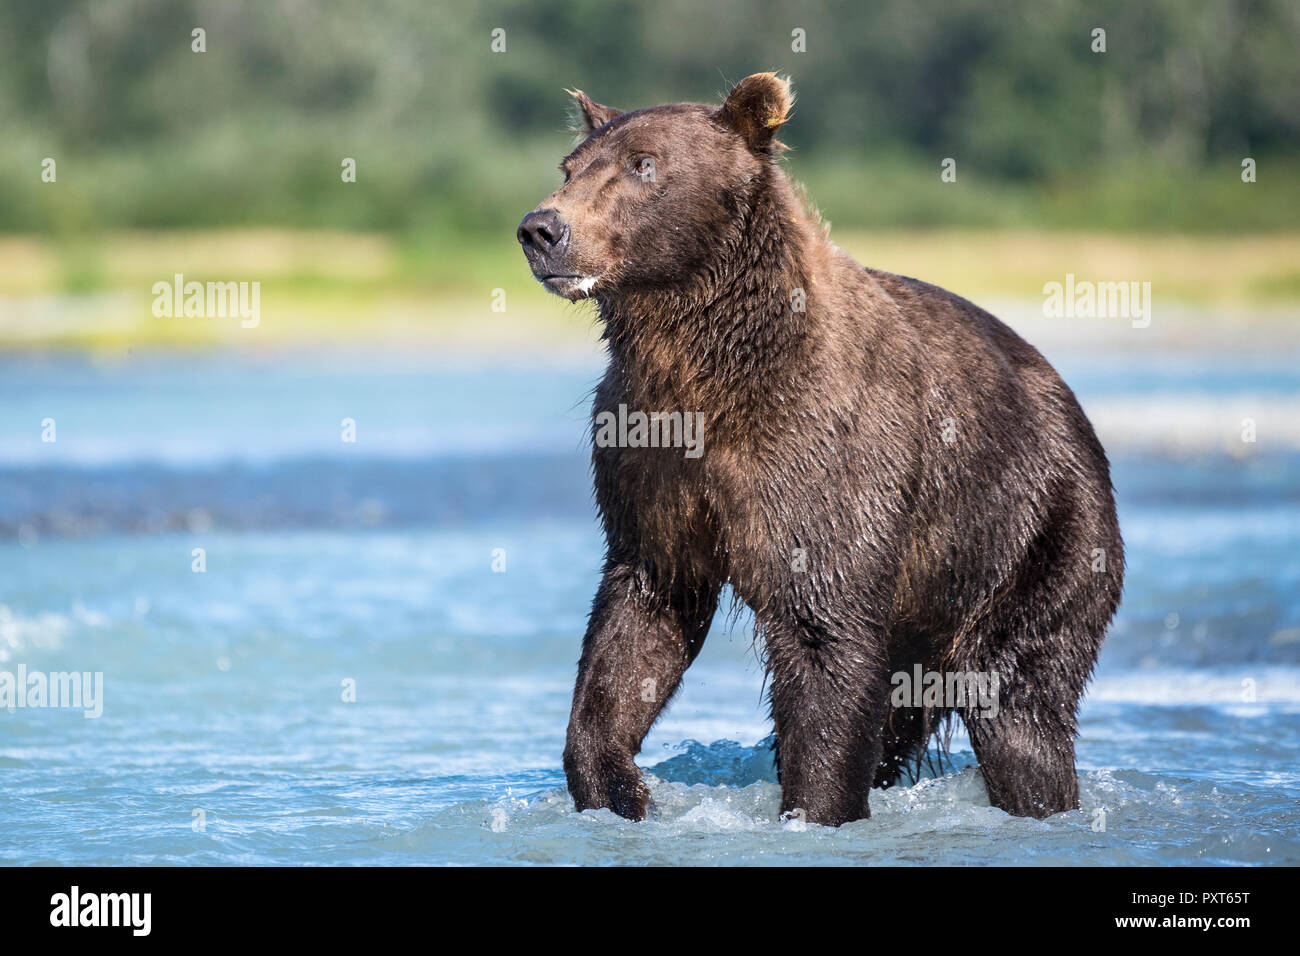 Brown bear (Ursus Arctos) standing in the river, Katmai National Park, Alaska, USA Stock Photo